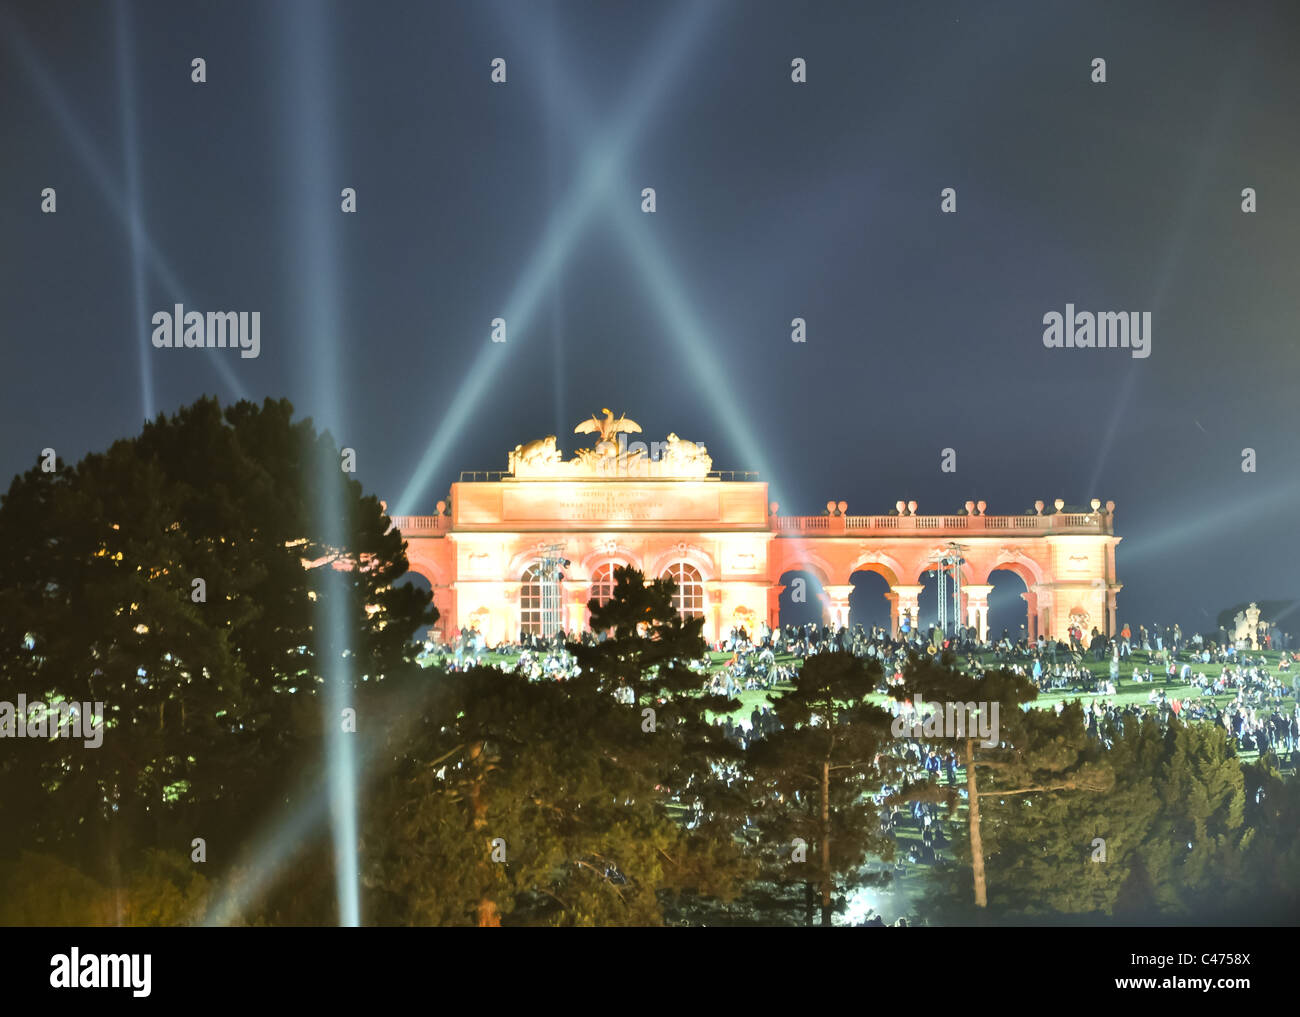 Les effets de lumière à la chapelle du château de Vienne la nuit durant la nuit d'été, concert de l'orchestre philharmonique de Vienne Banque D'Images